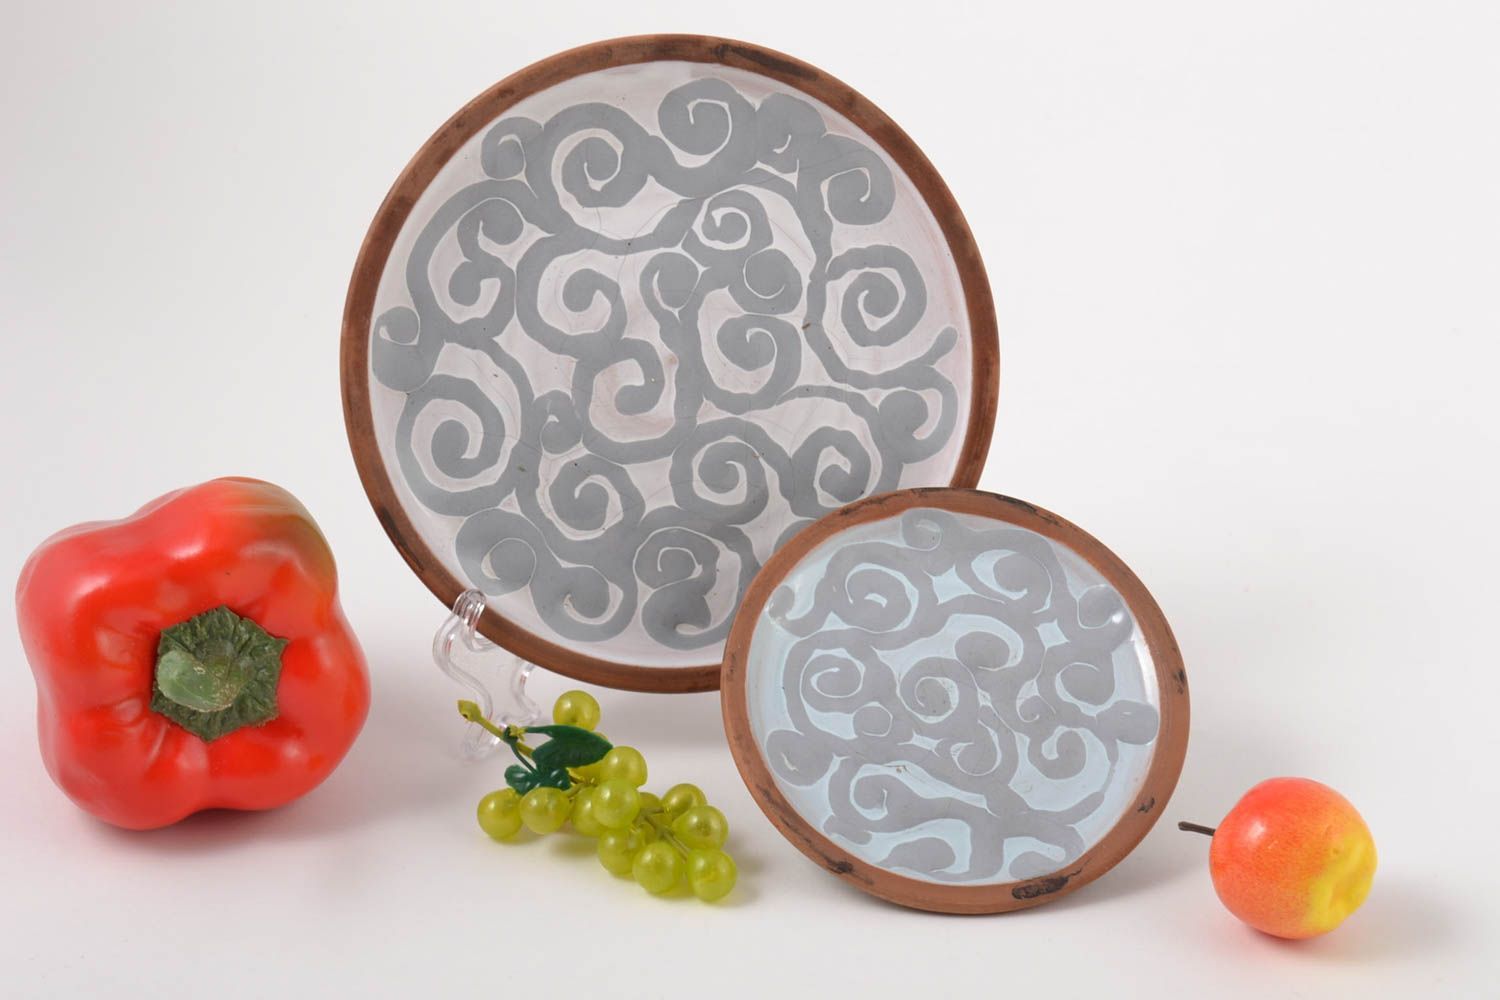 Platos de cerámica decorados hechos a mano utensilios de cocina vajilla moderna foto 1